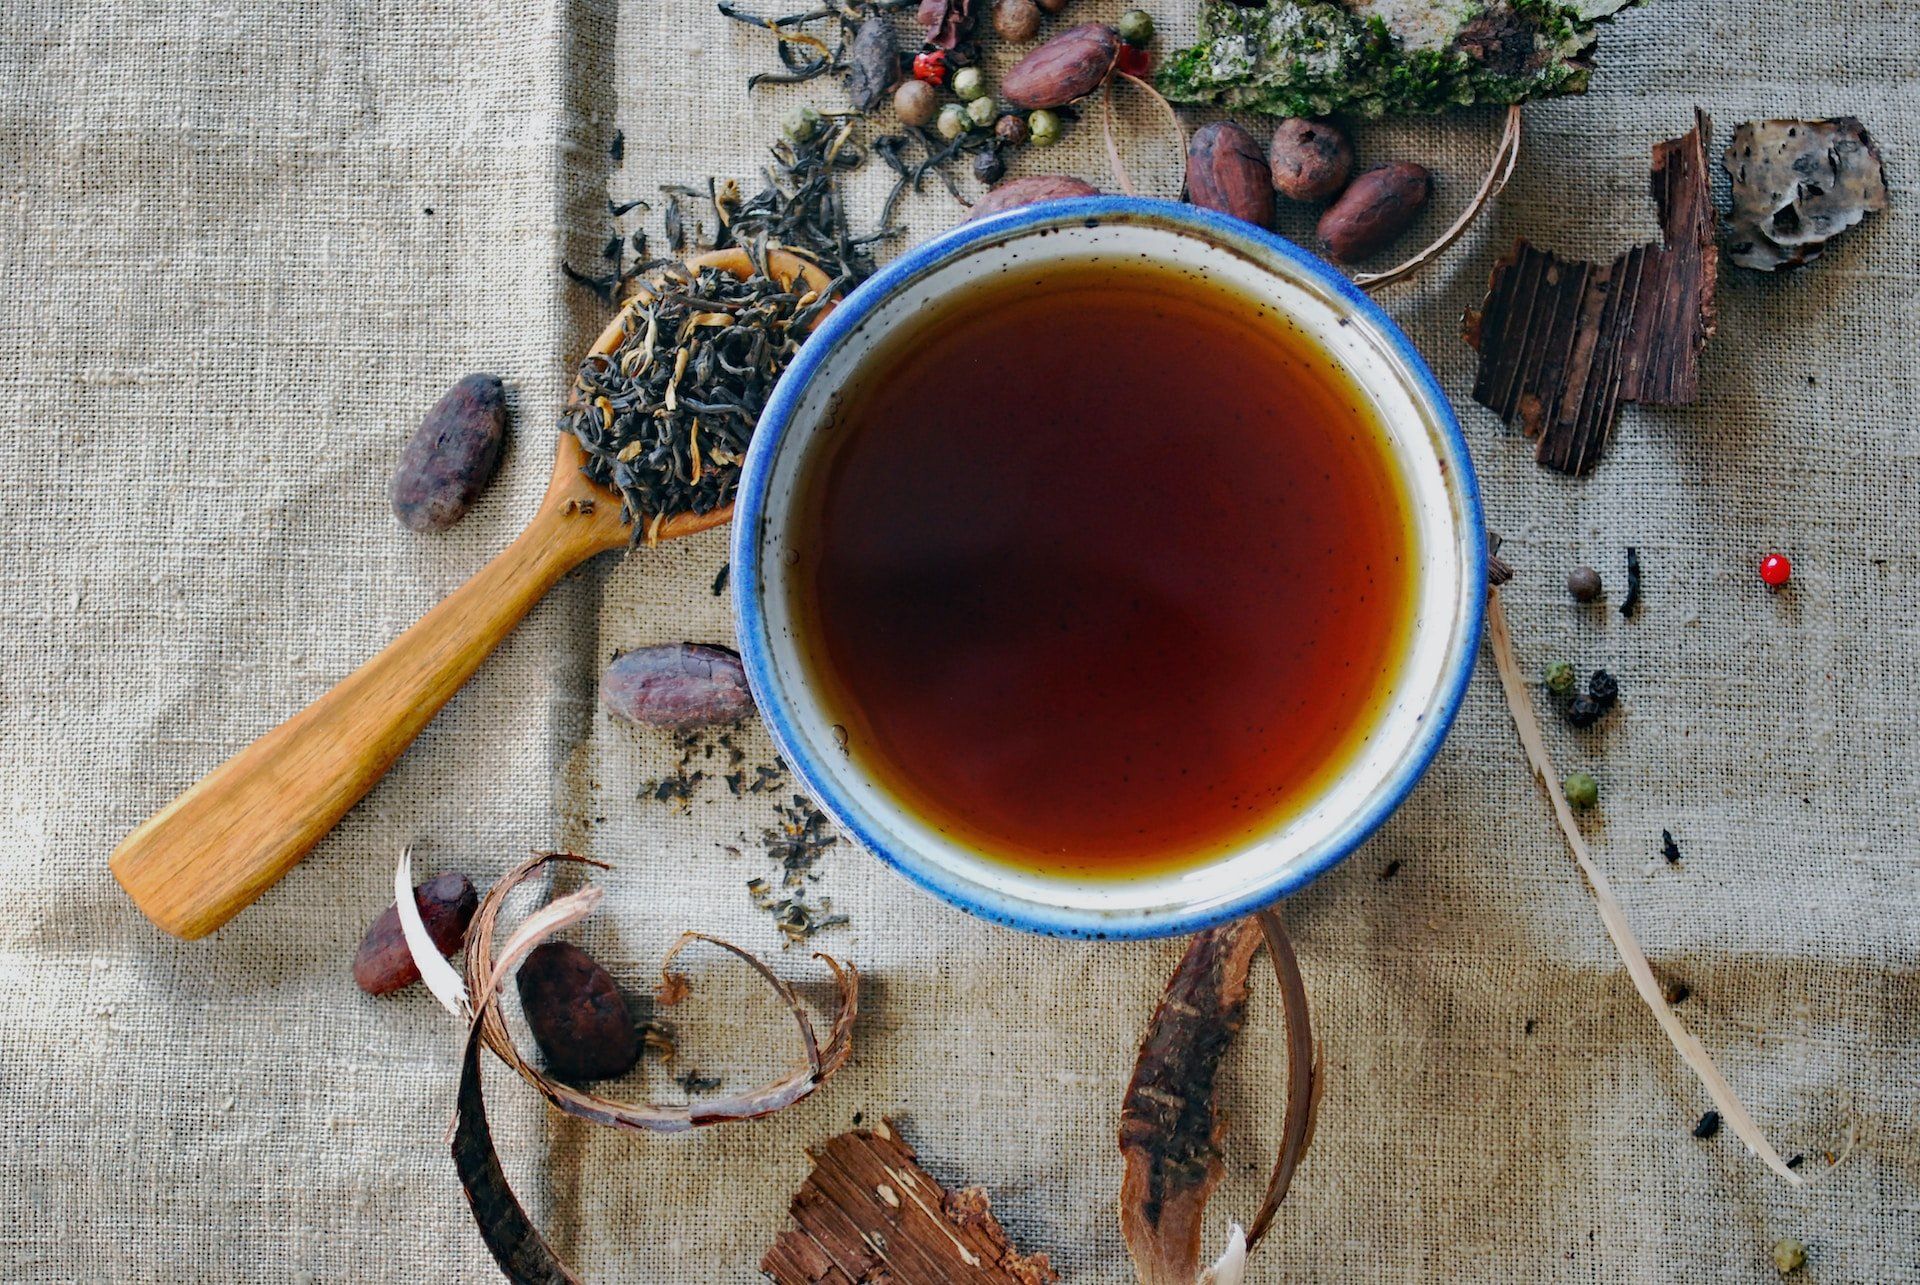 Kína Yunnan tartományából származó gazdag fekete tea 